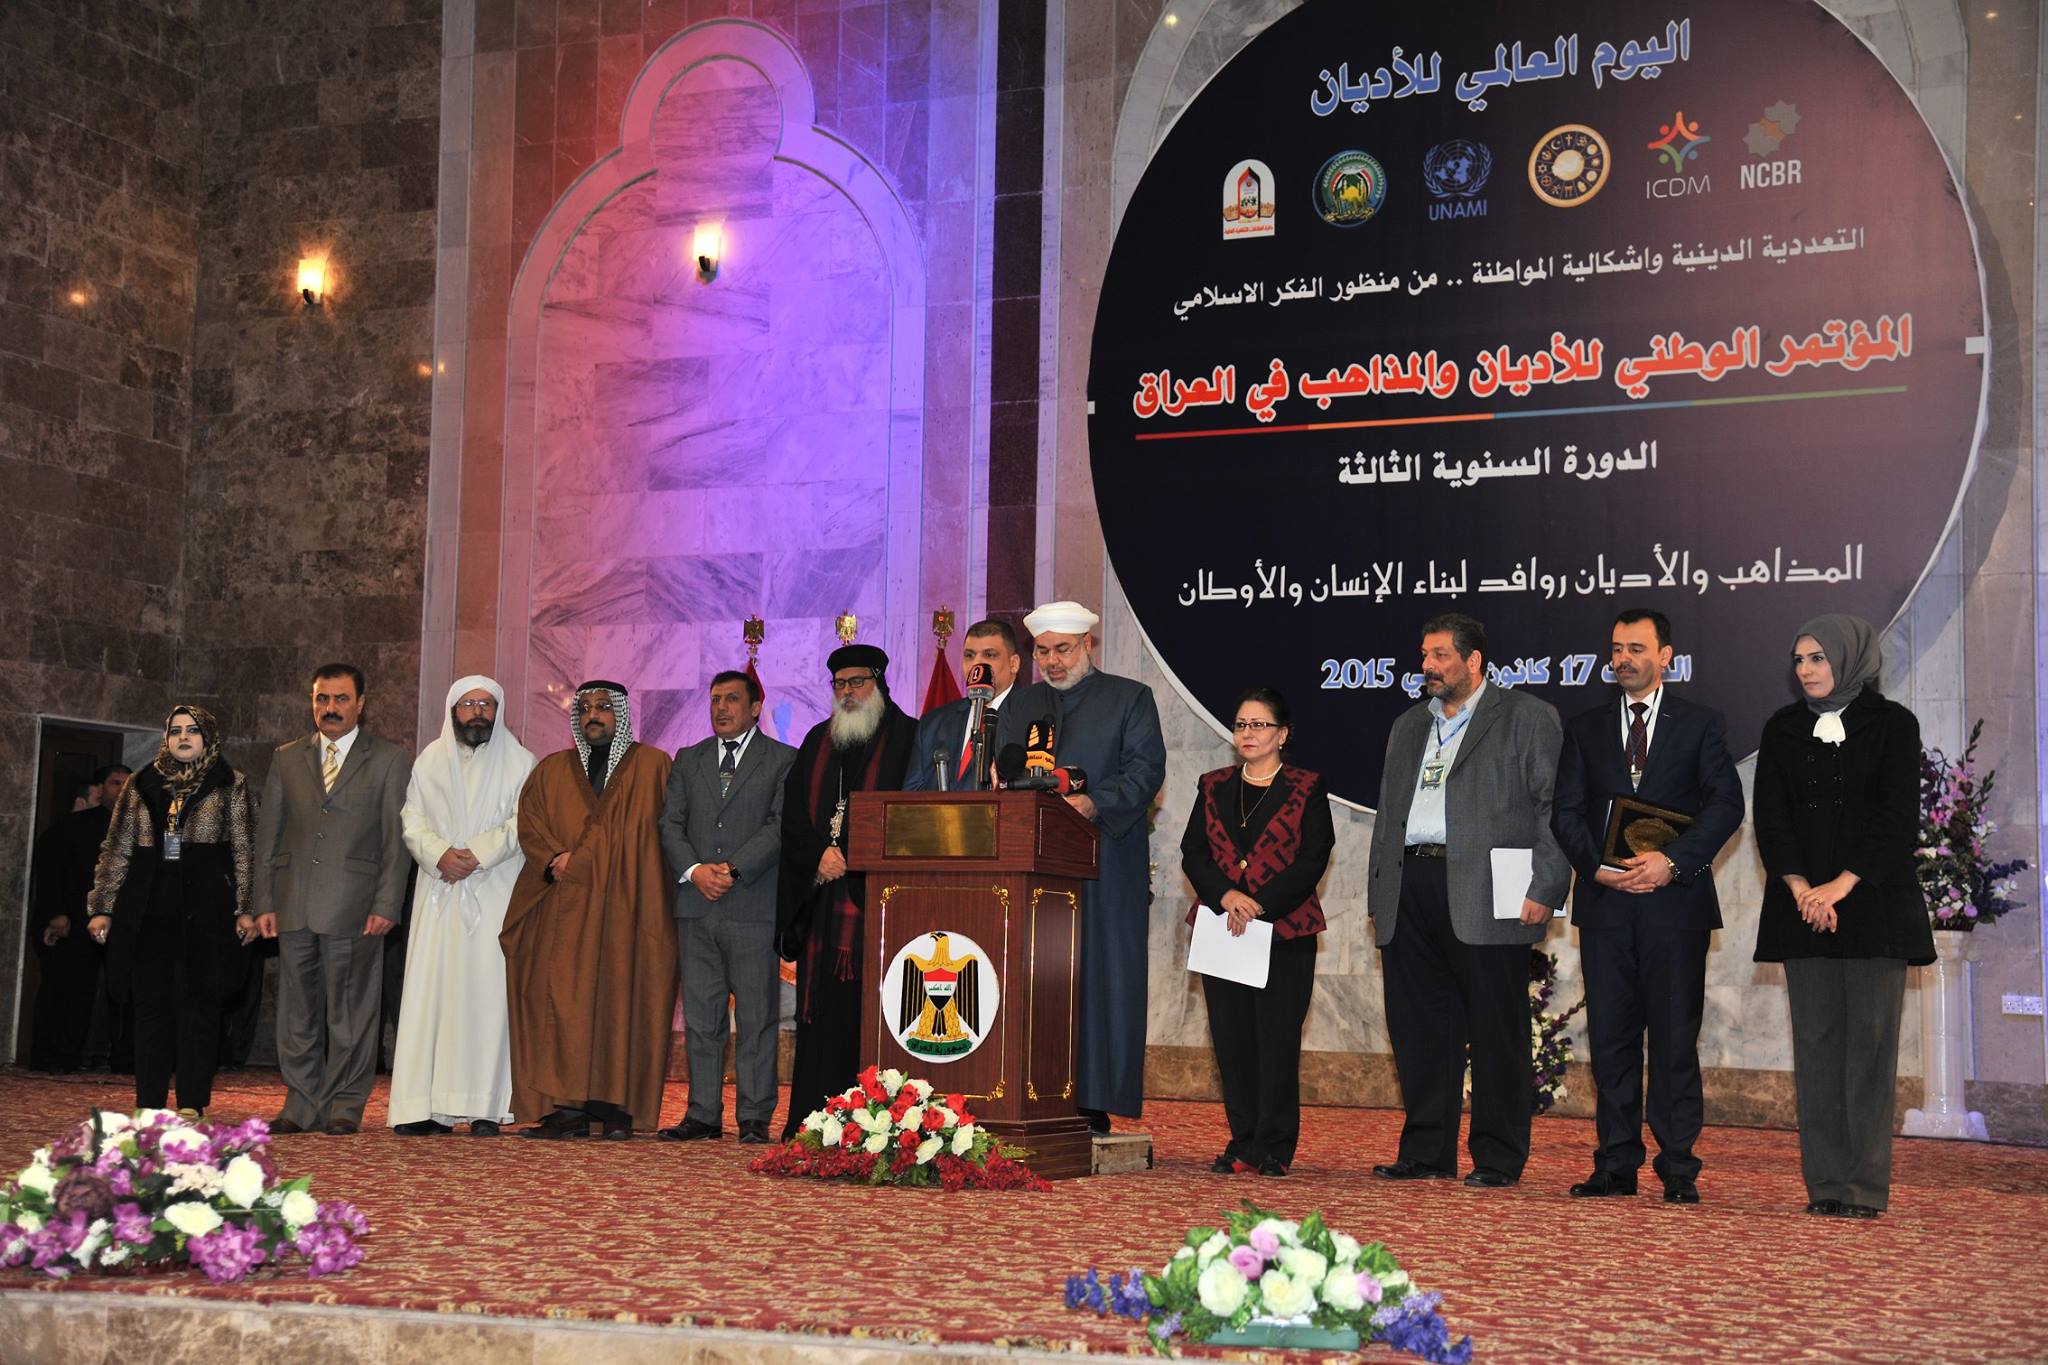 ديوان الوقف السني يحتضن المؤتمر الوطني للاديان والمذاهب في العراق بنسخته الثالثة (3)